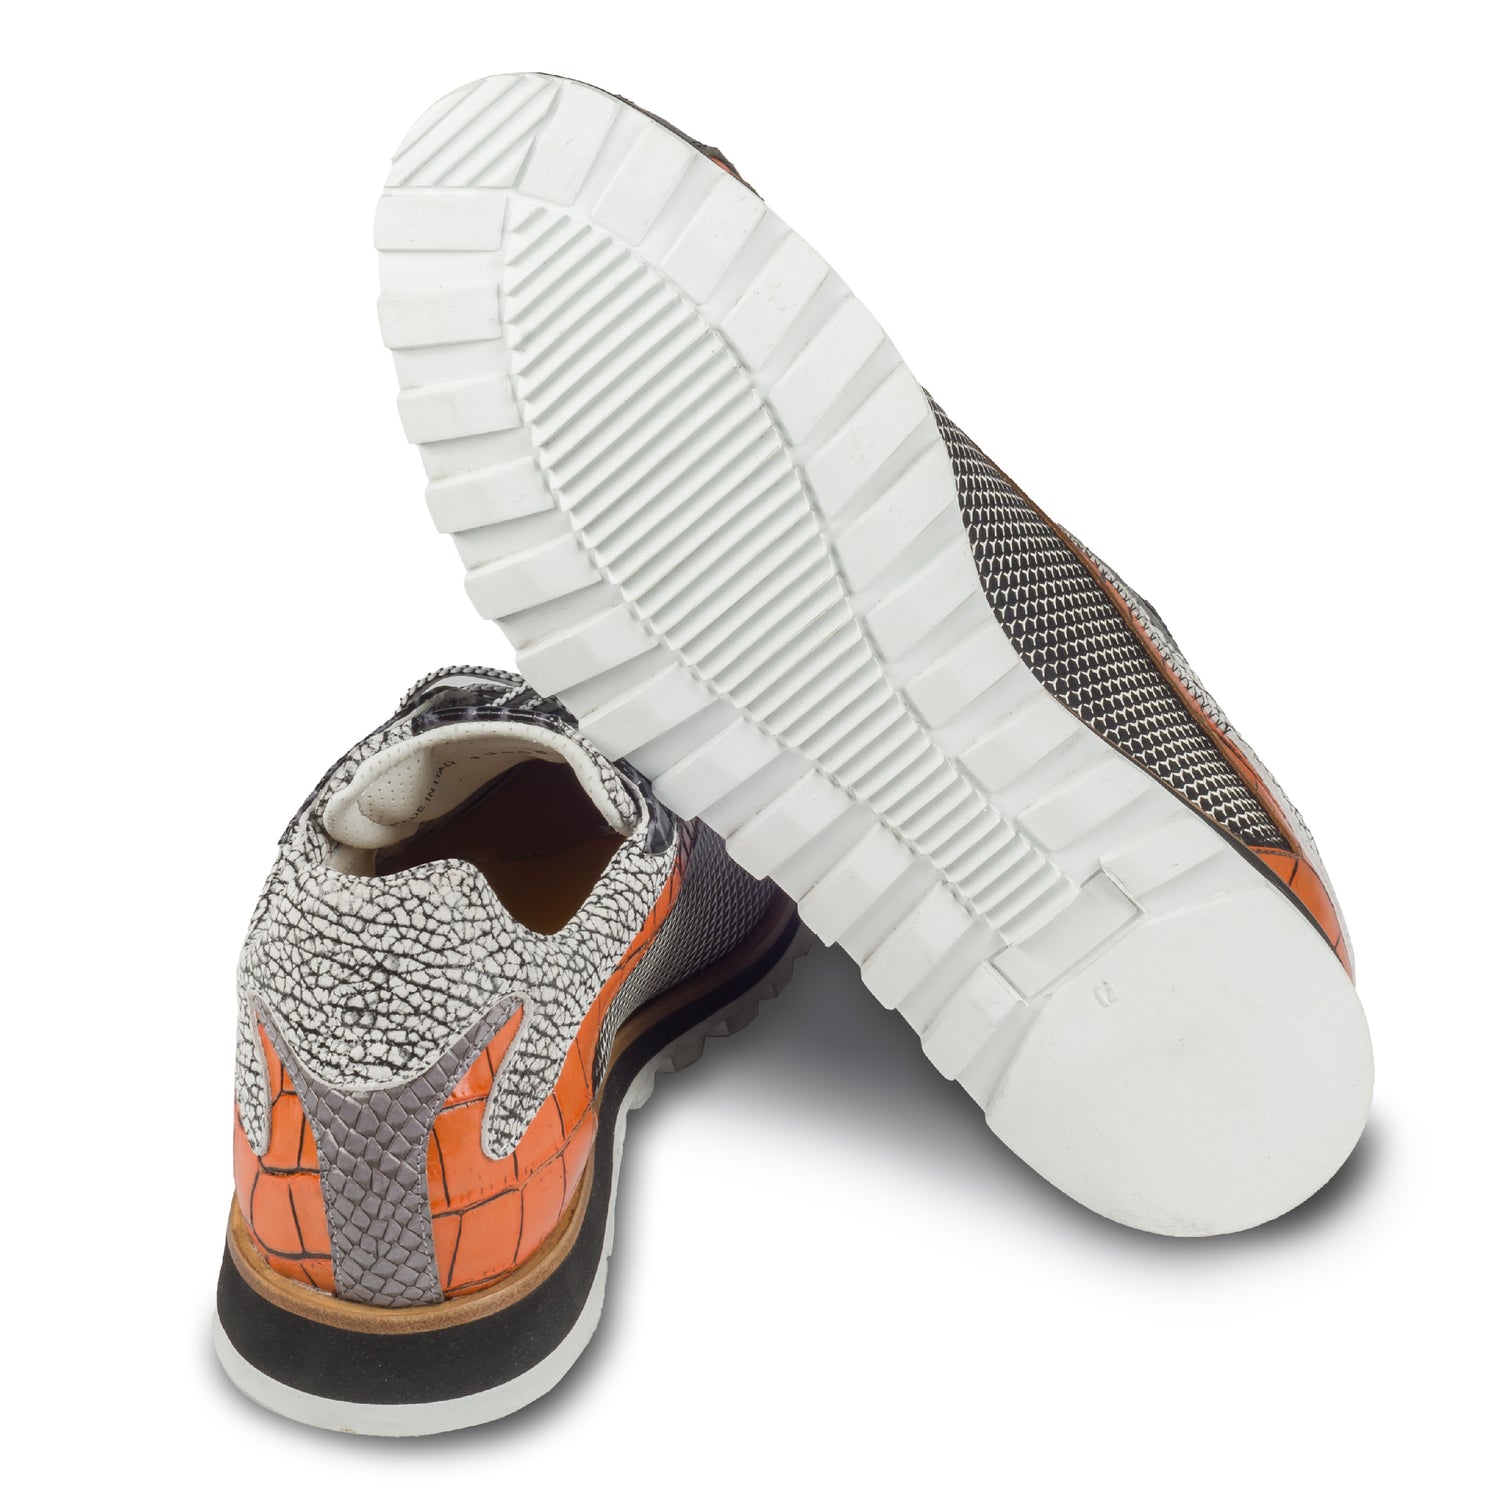 Lorenzi Herren Leder-Sneaker mit raffinierter Prägung in schwarz / weiß / orange. Handgefertigt. Ansicht der Ferse und Sohlenunterseite. 